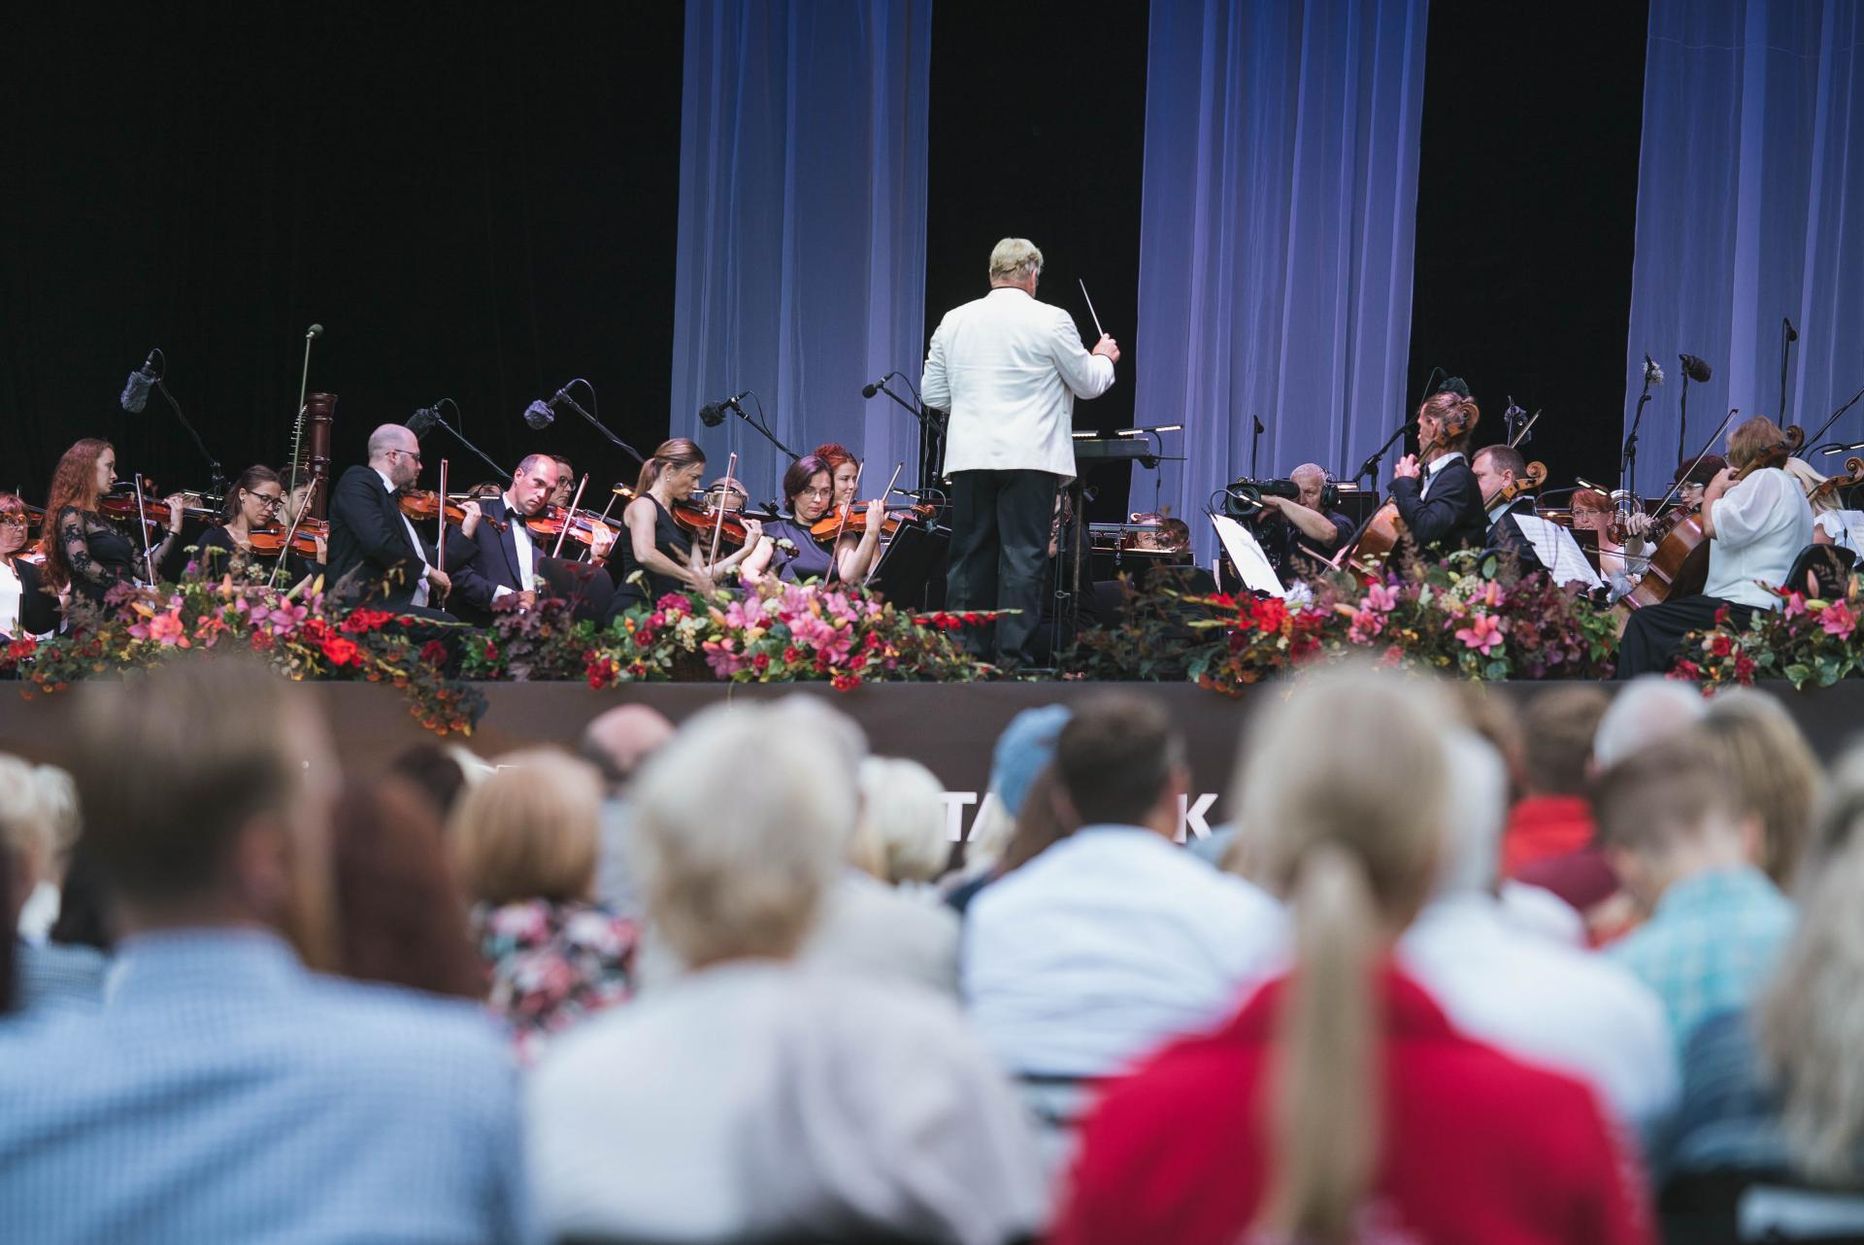 Pühapäevaõhtune kontsert oli dirigent Paul Mägi viimane selles ametis.